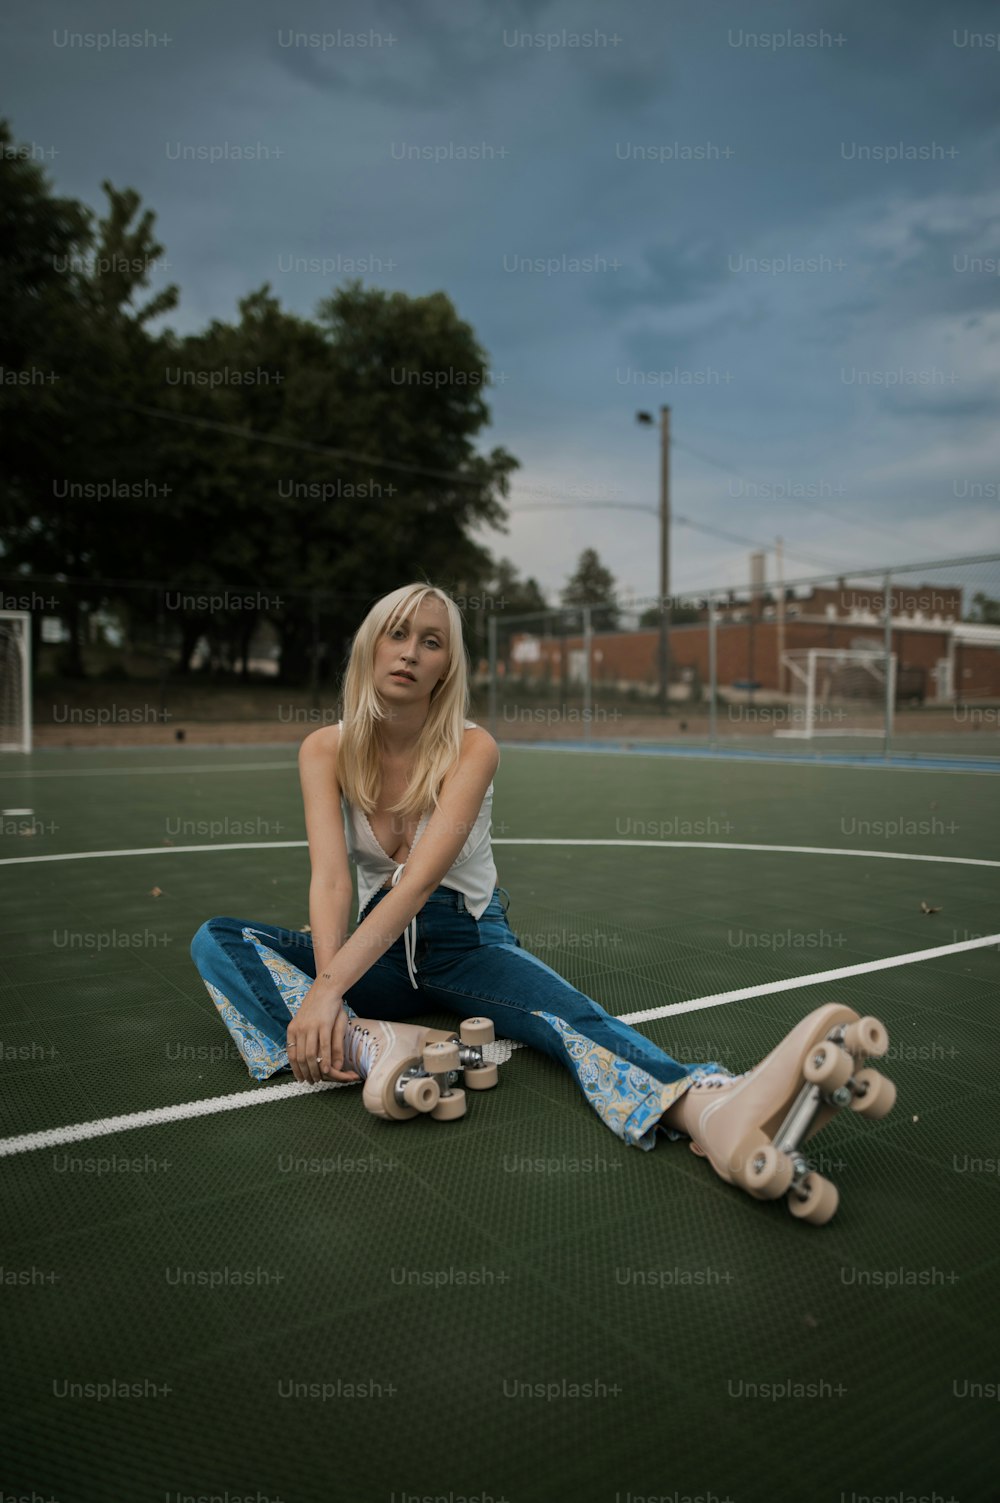 Una donna seduta a terra con il suo skateboard